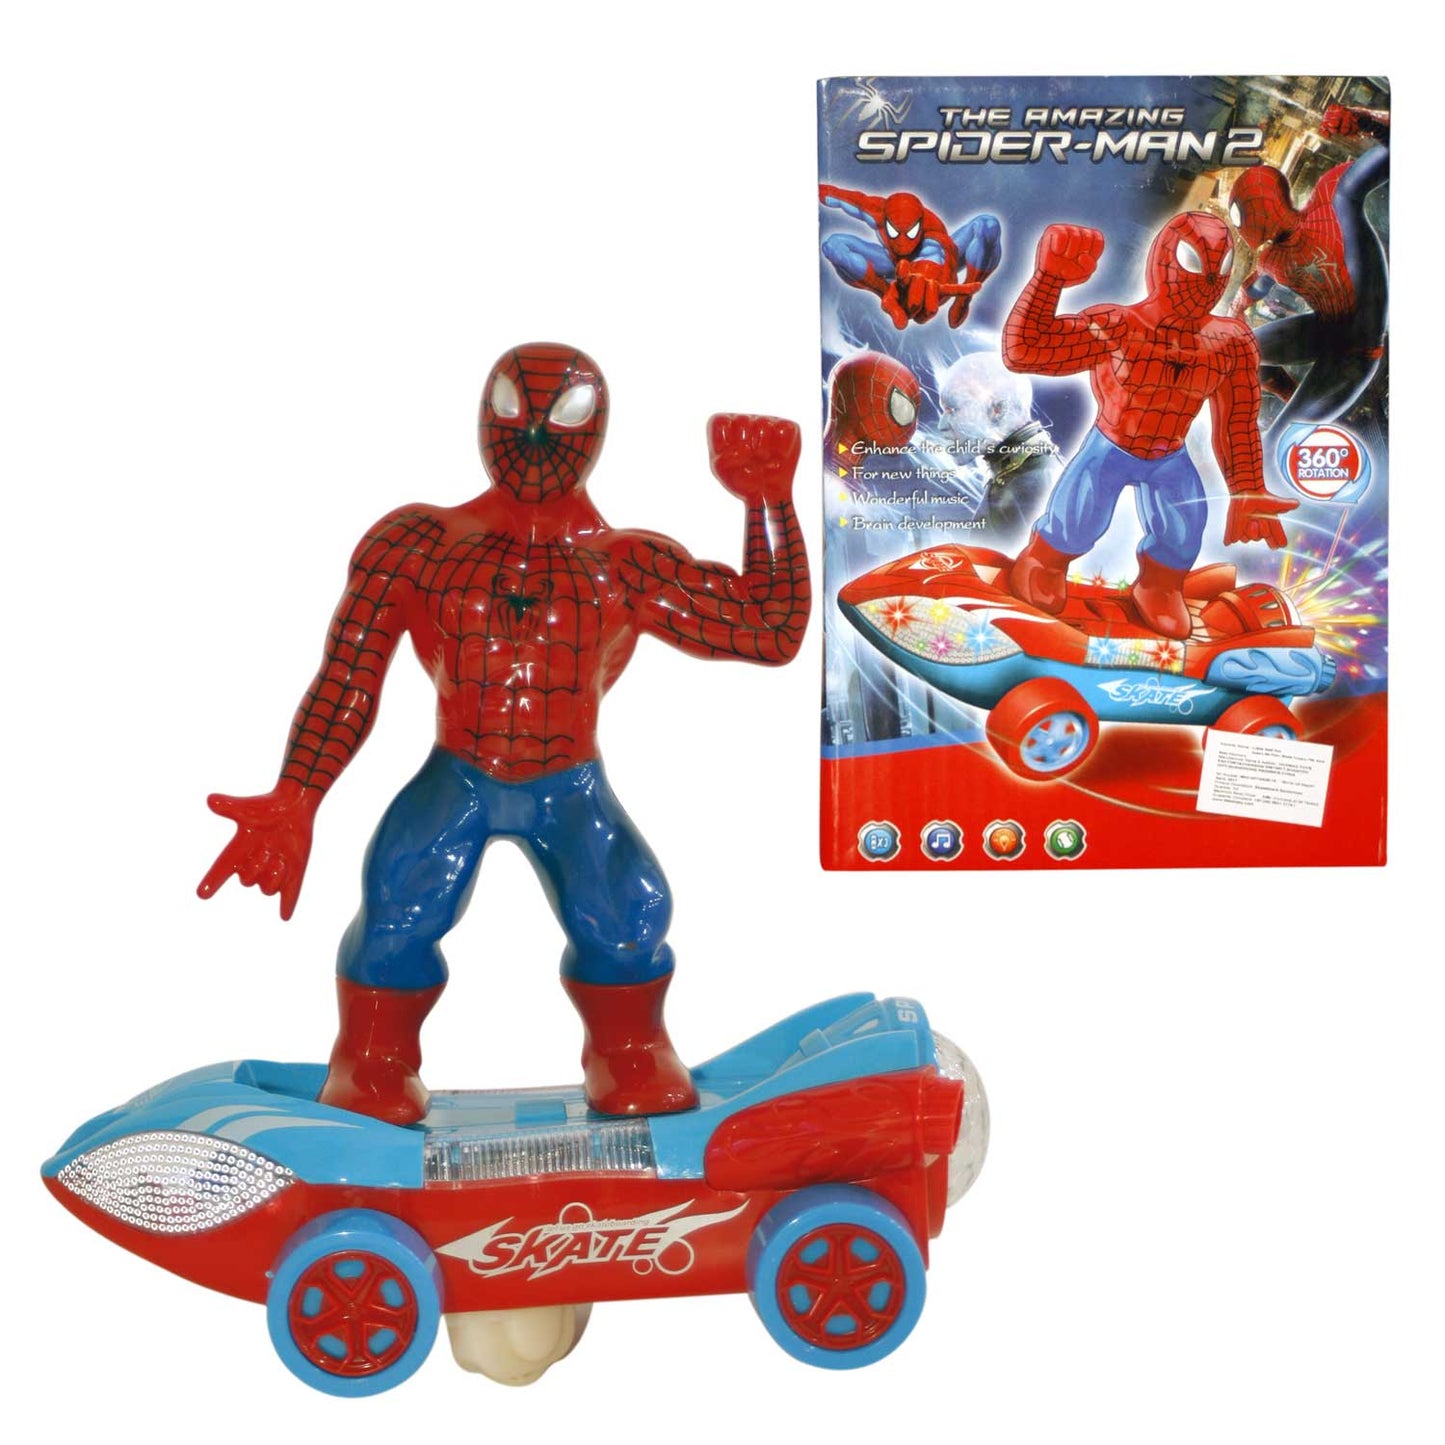 Skateboard Spider-Man